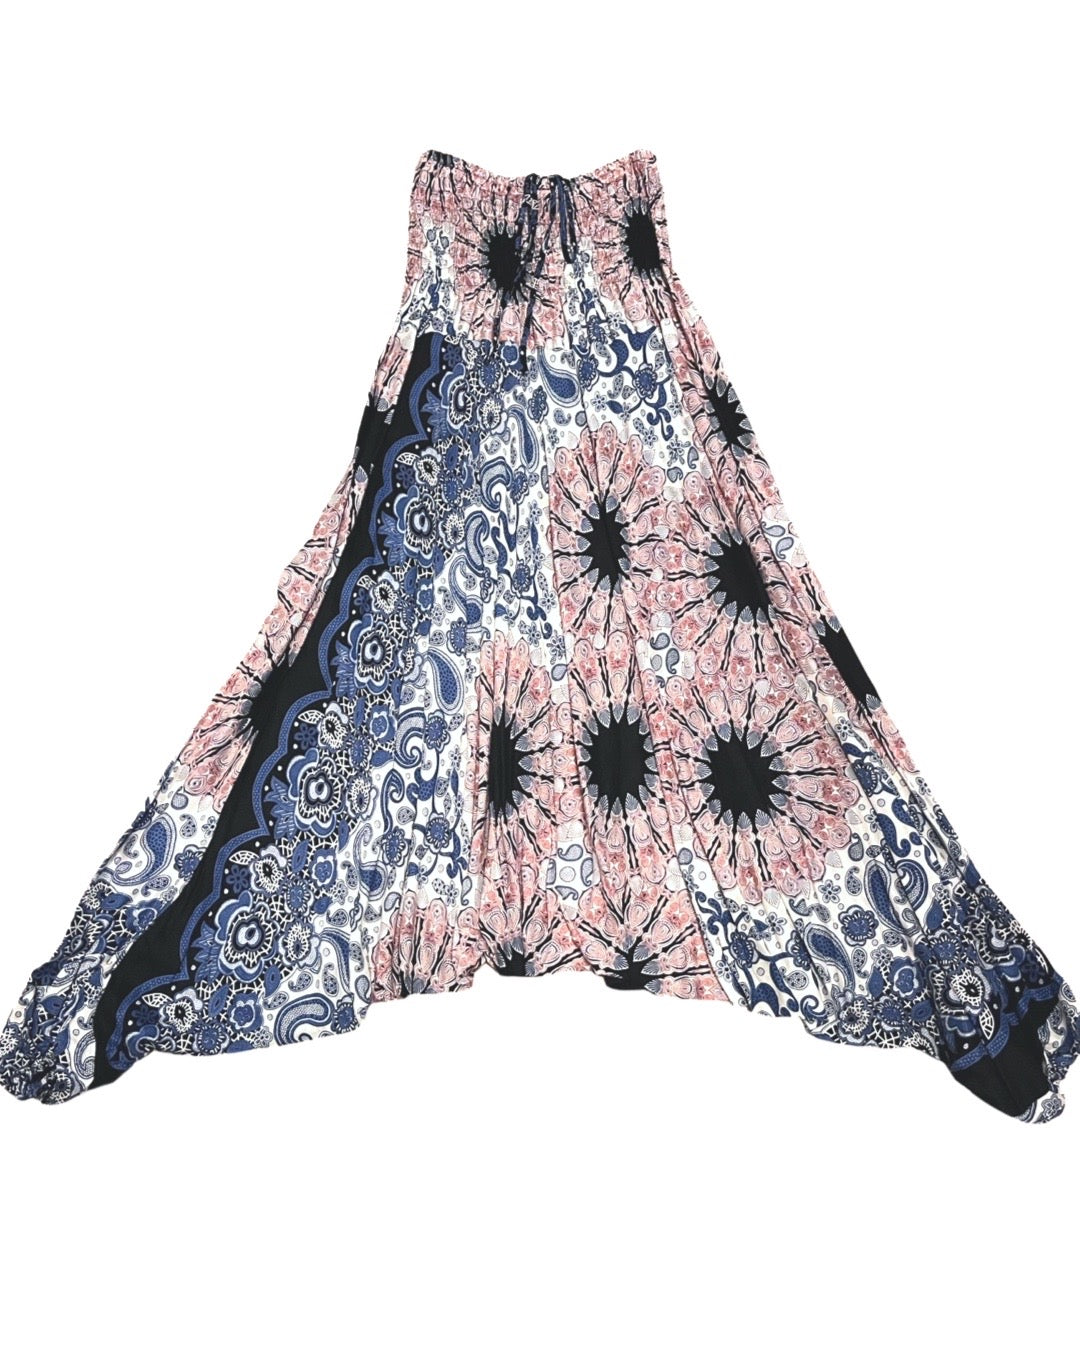 Jumpsuit Harem Pants with Pastel Floral Paisley Print